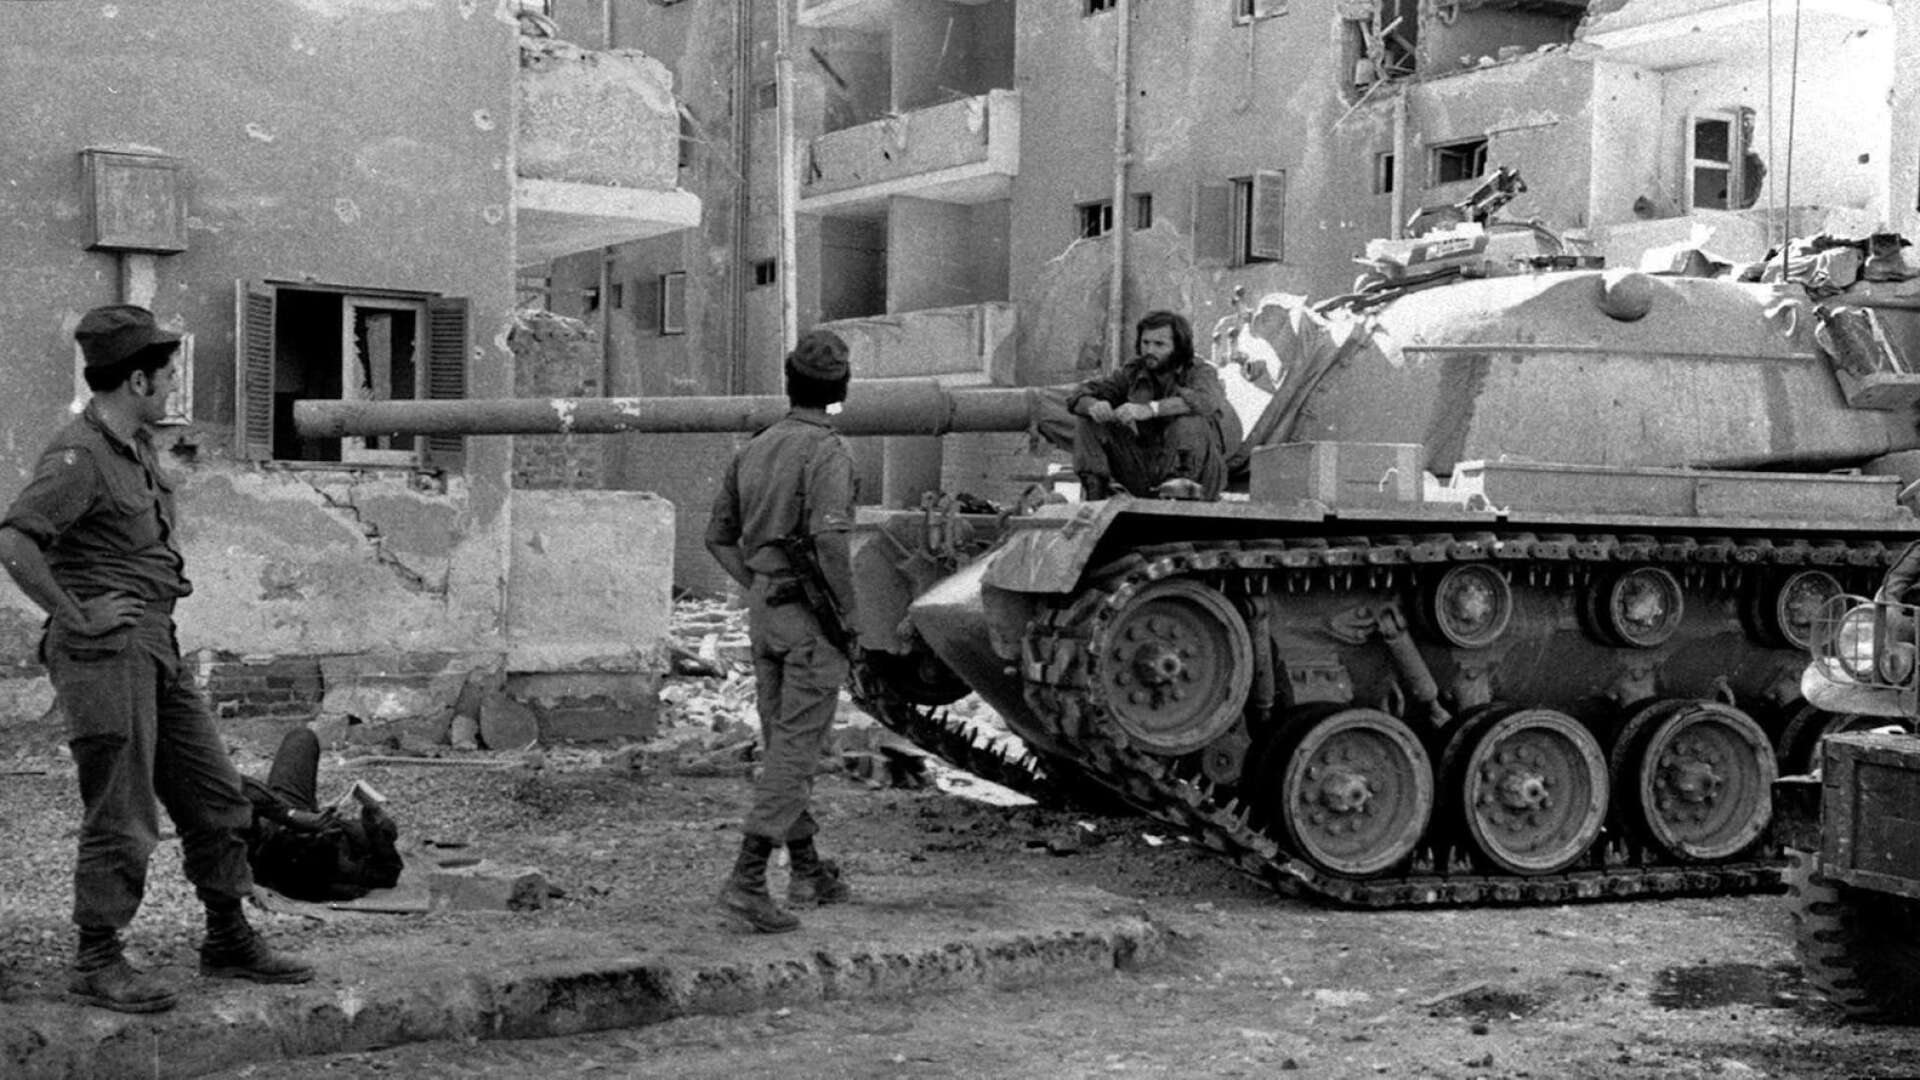 Israel har också angripits gång på gång av de omkringliggande länderna och fått kämpa för sin existens, skriver Mats Fält. (Bild från Yom Kippur-kriget 1973.)